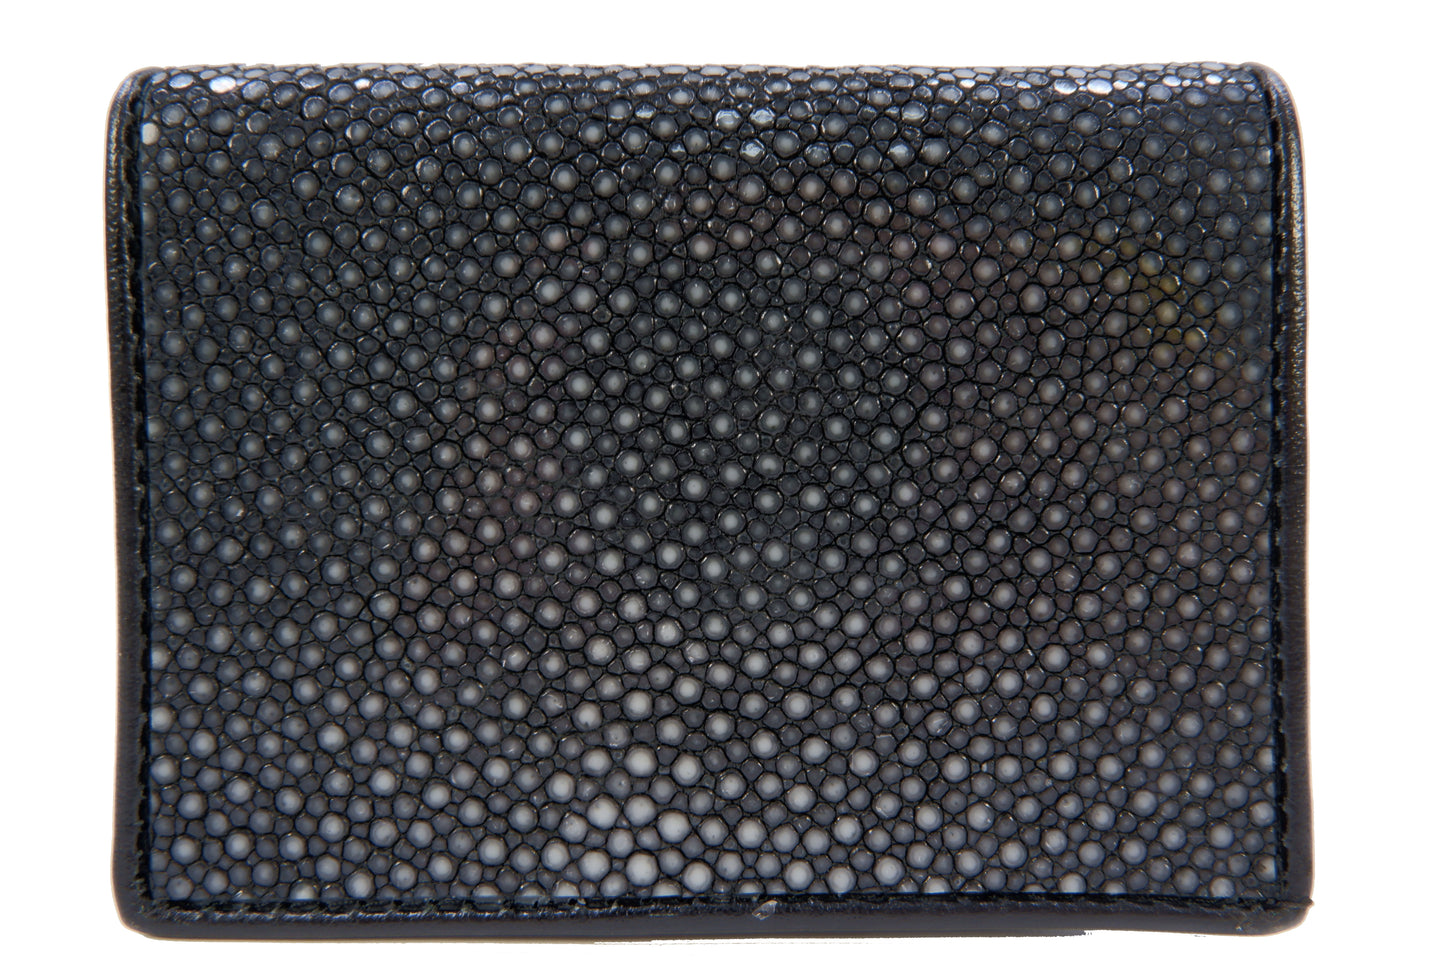 Genuine Polished Stingray Skin Business & Credit Card Holder Wallet Black